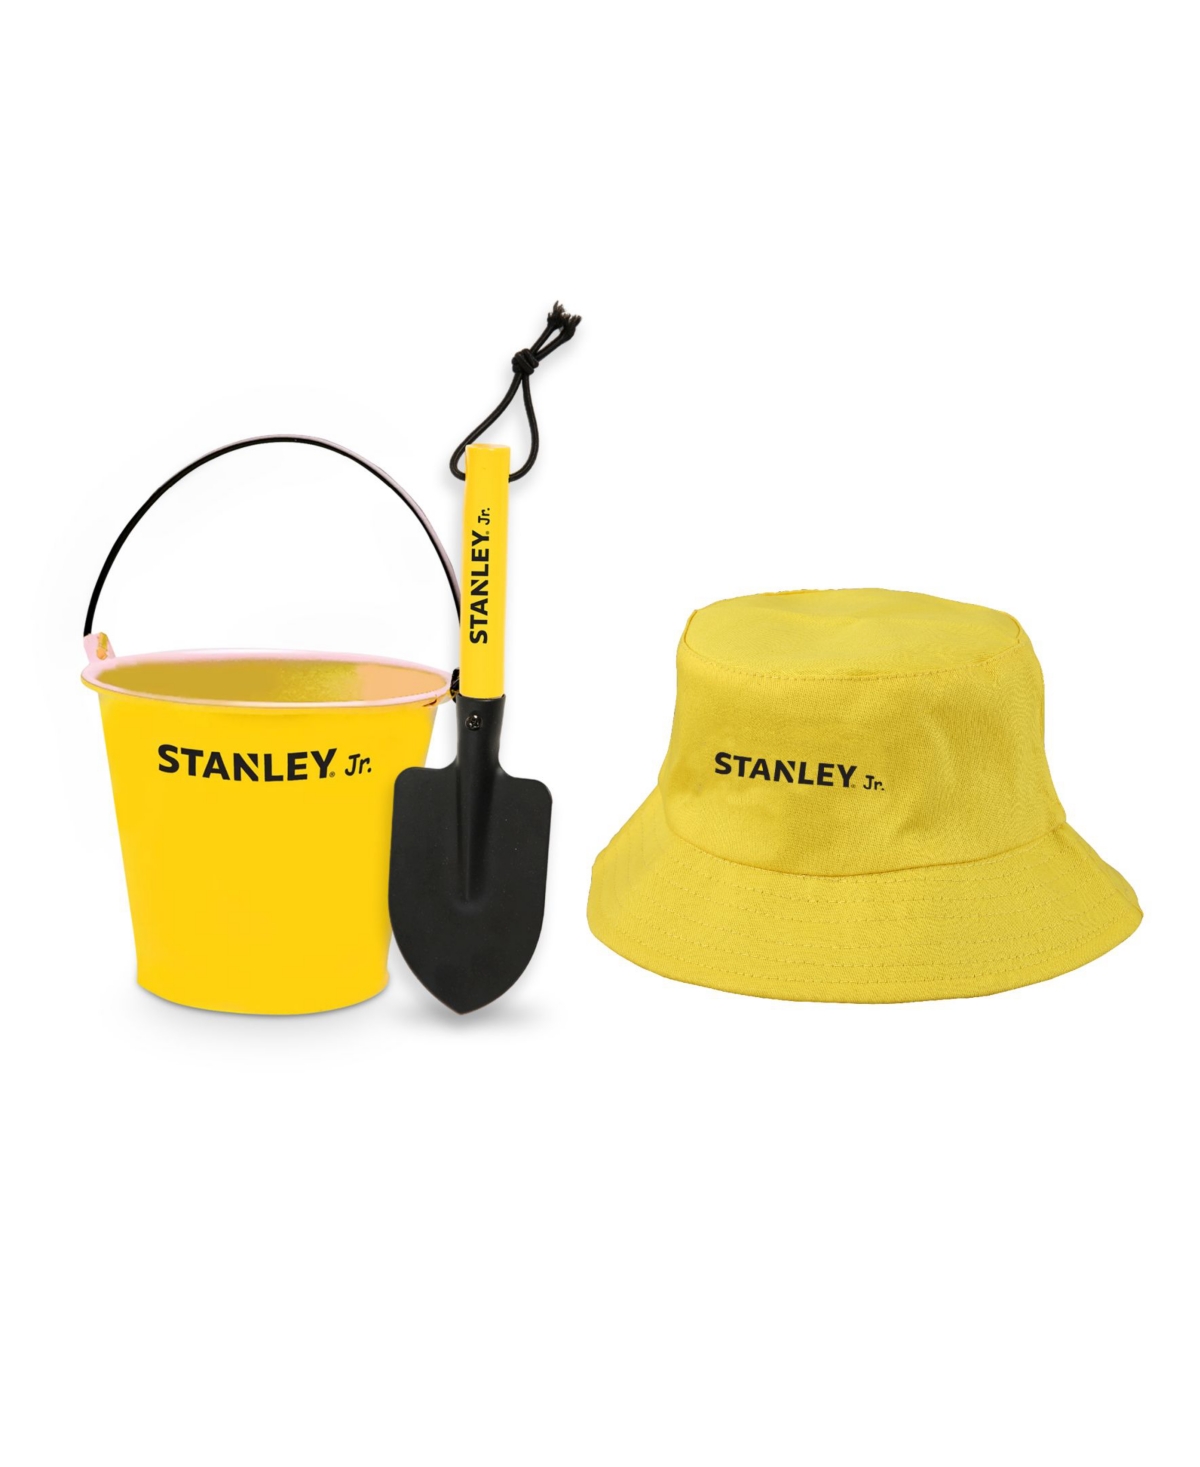 Stanley Jr. 3 Piece Garden Toolset In Black,yellow